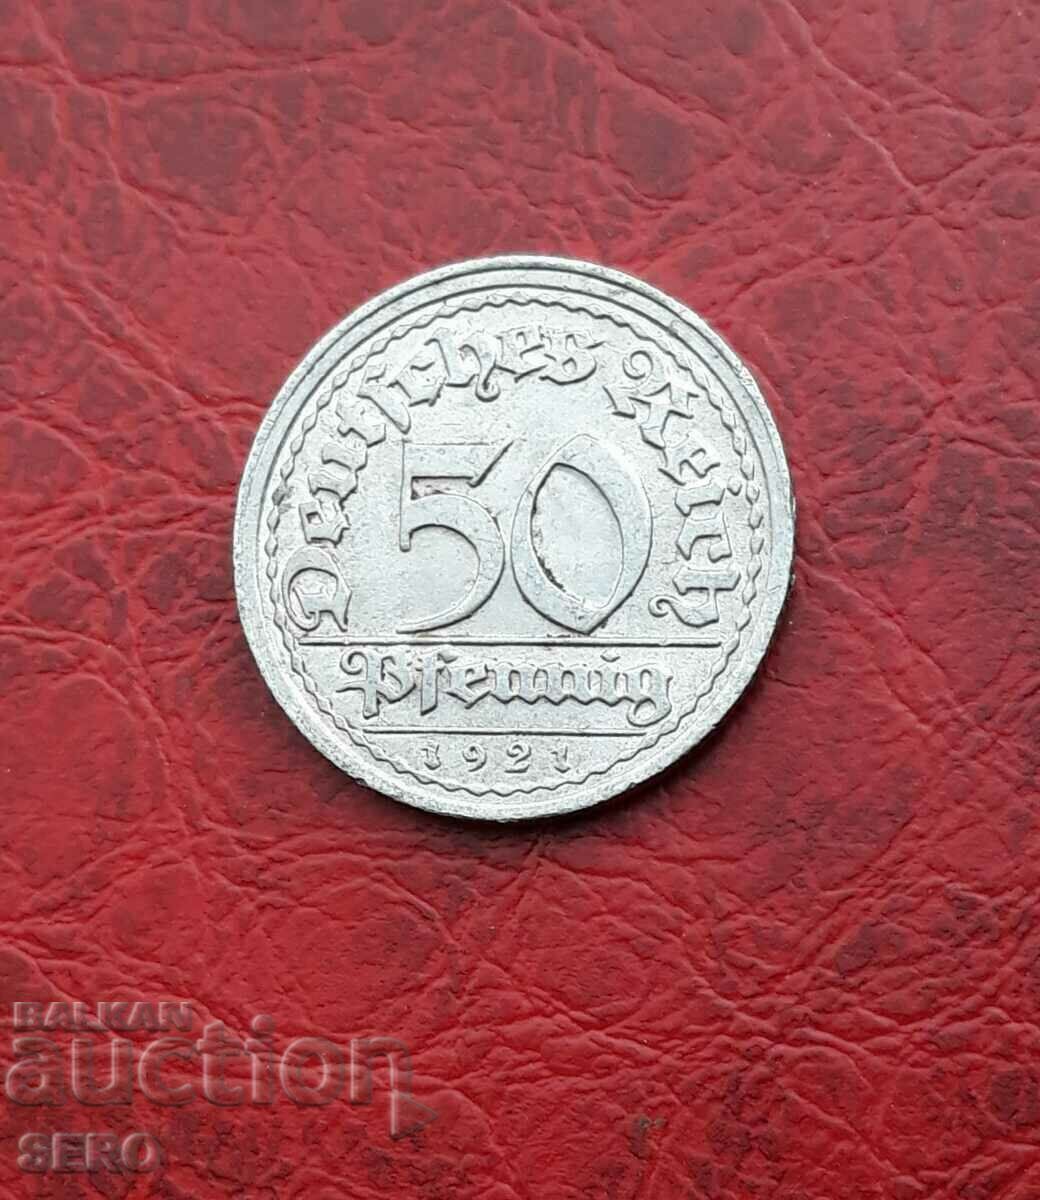 Germany-50 pfennig 1921 G-Karlsruhe